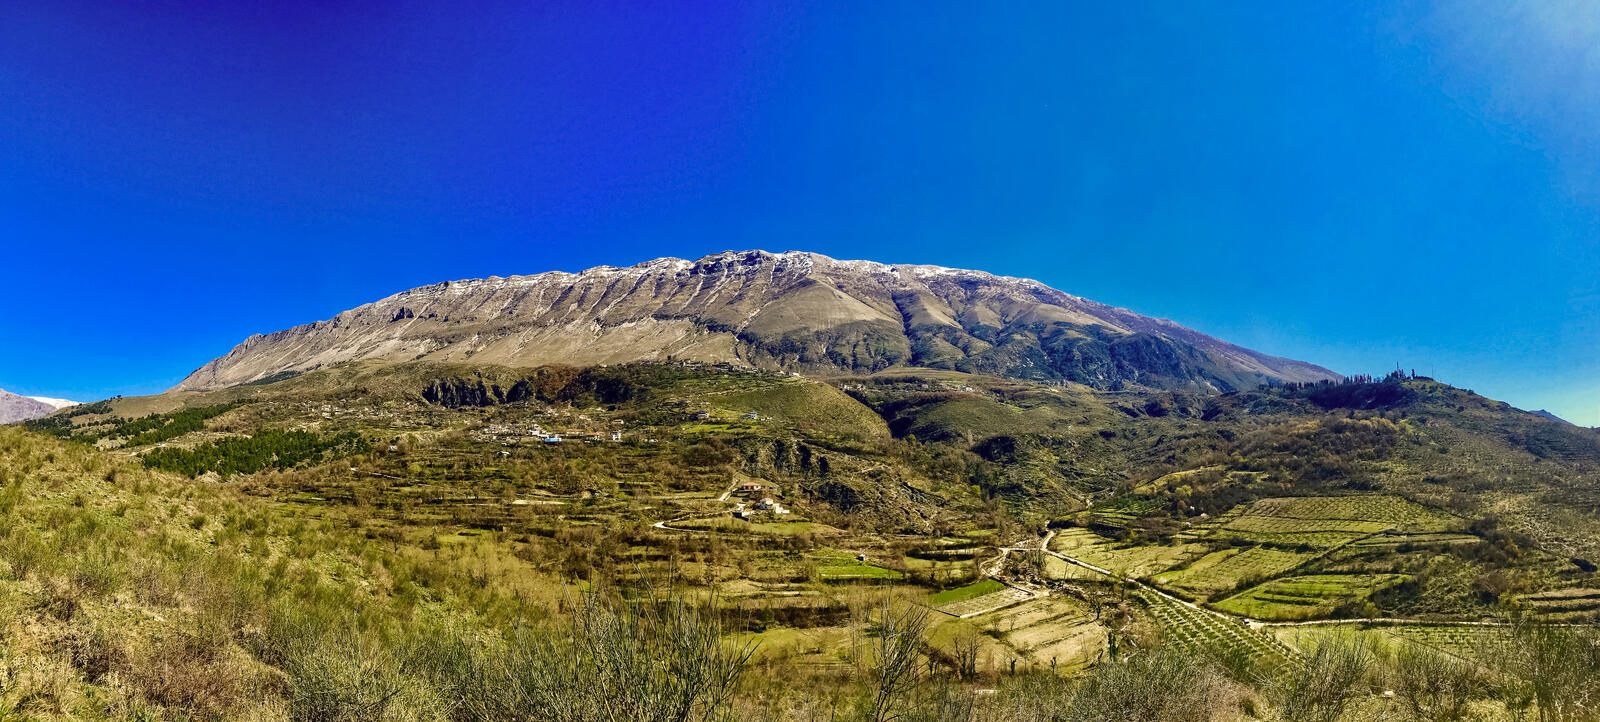 Обои гора пейзаж албания на рабочий стол